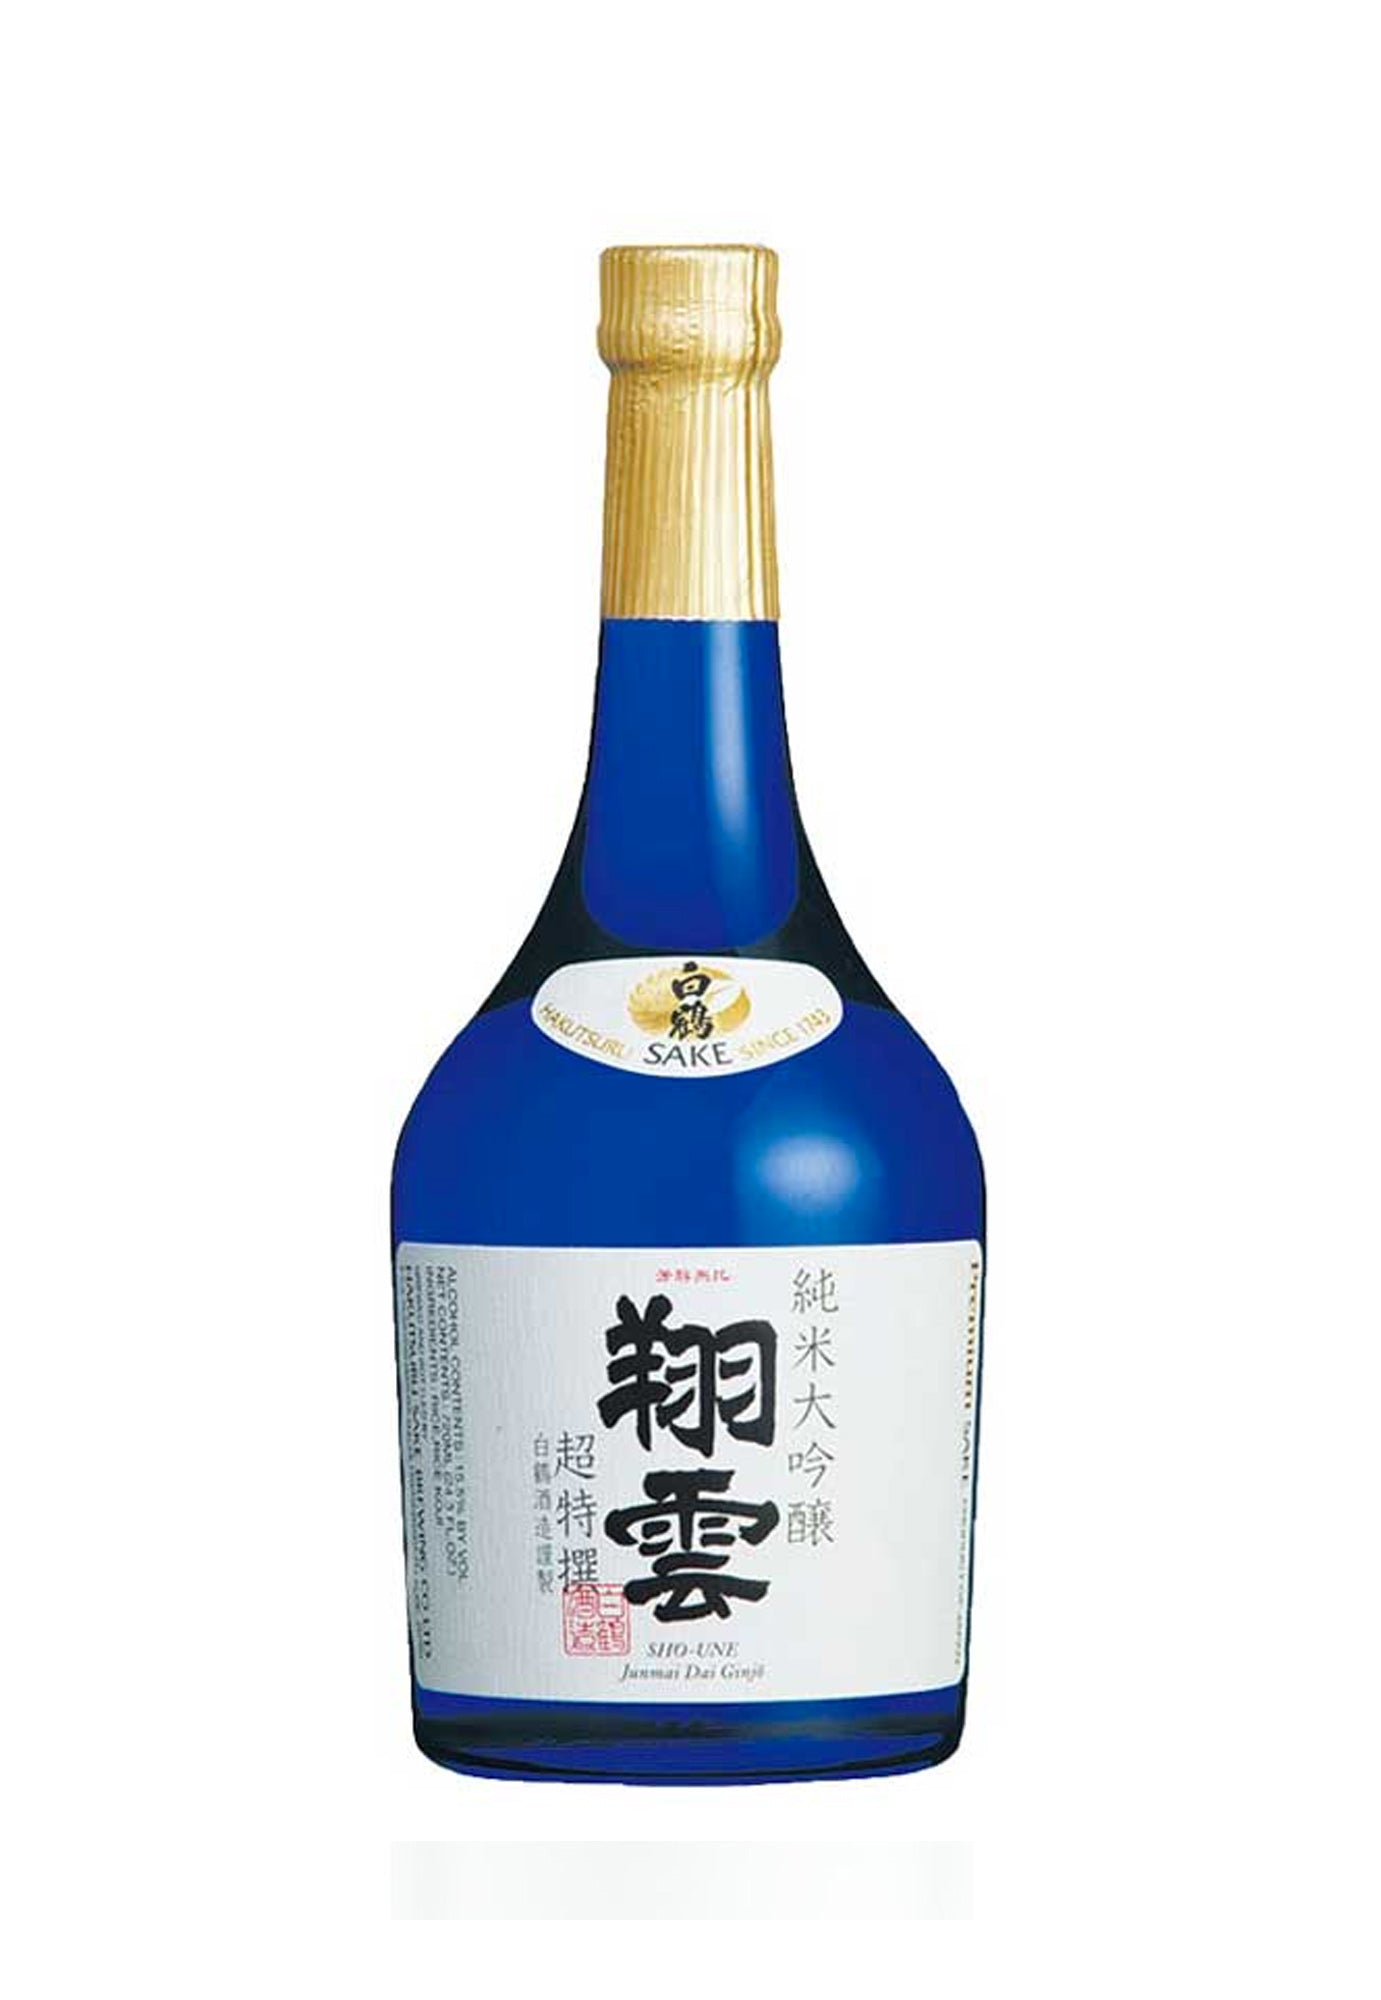 Hakutsuru Sho-Une Junmai Daiginjo Sake - 300 ml